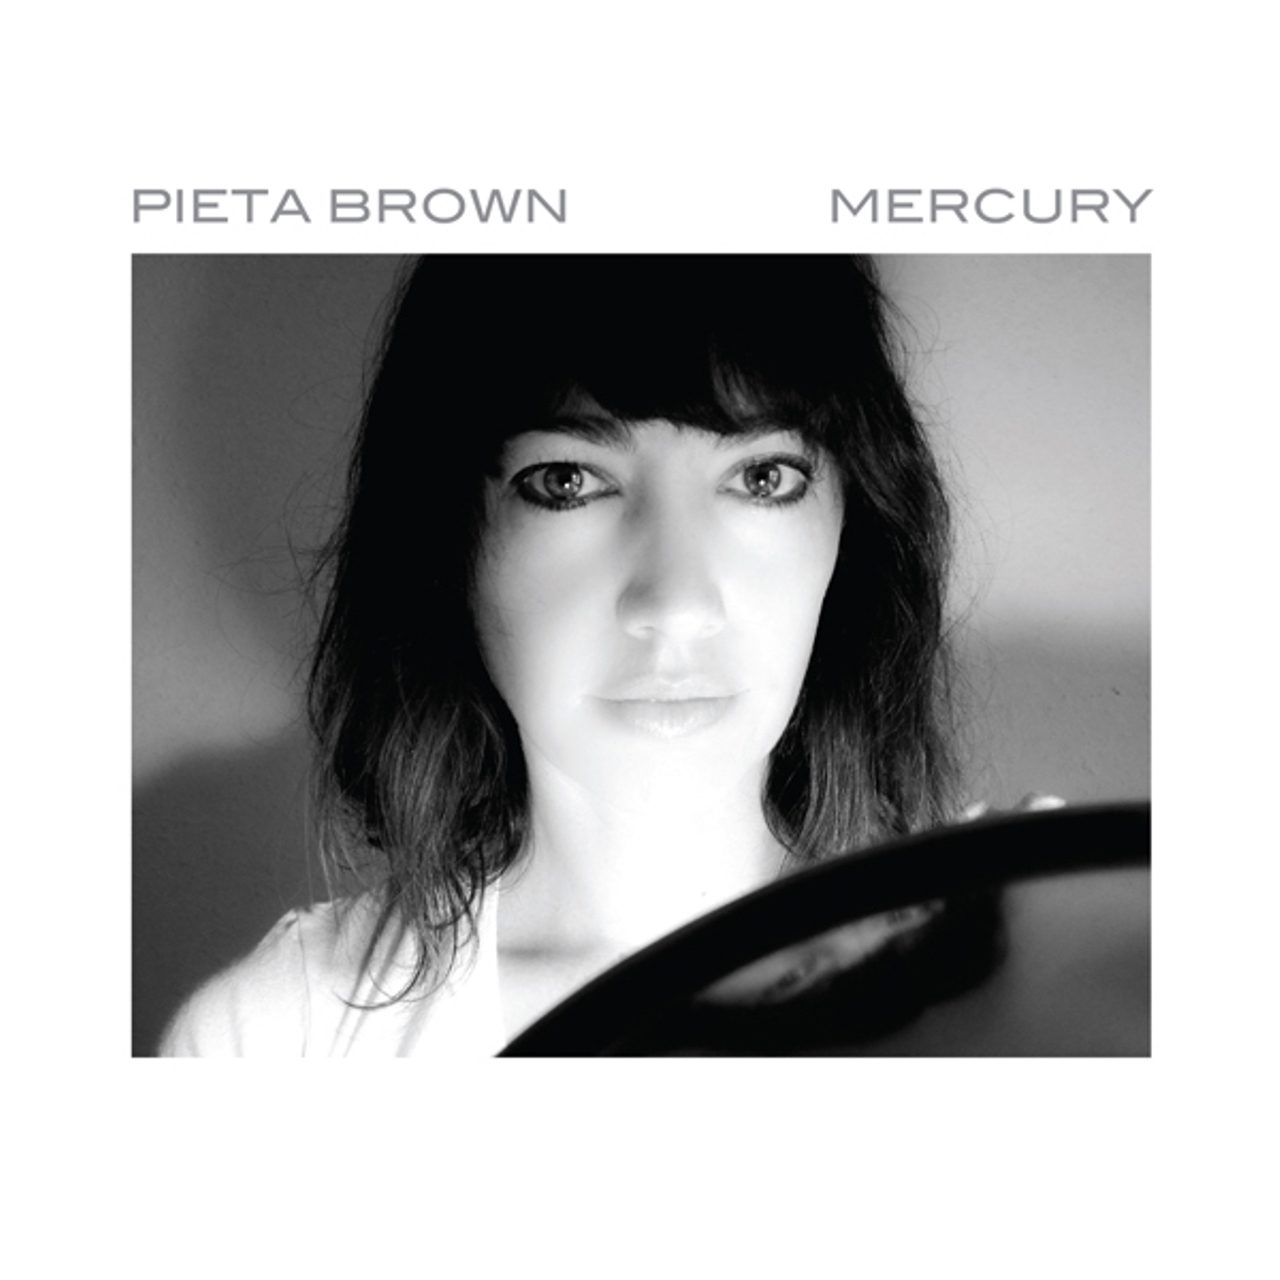 Pieta Brown - Mercury cover album